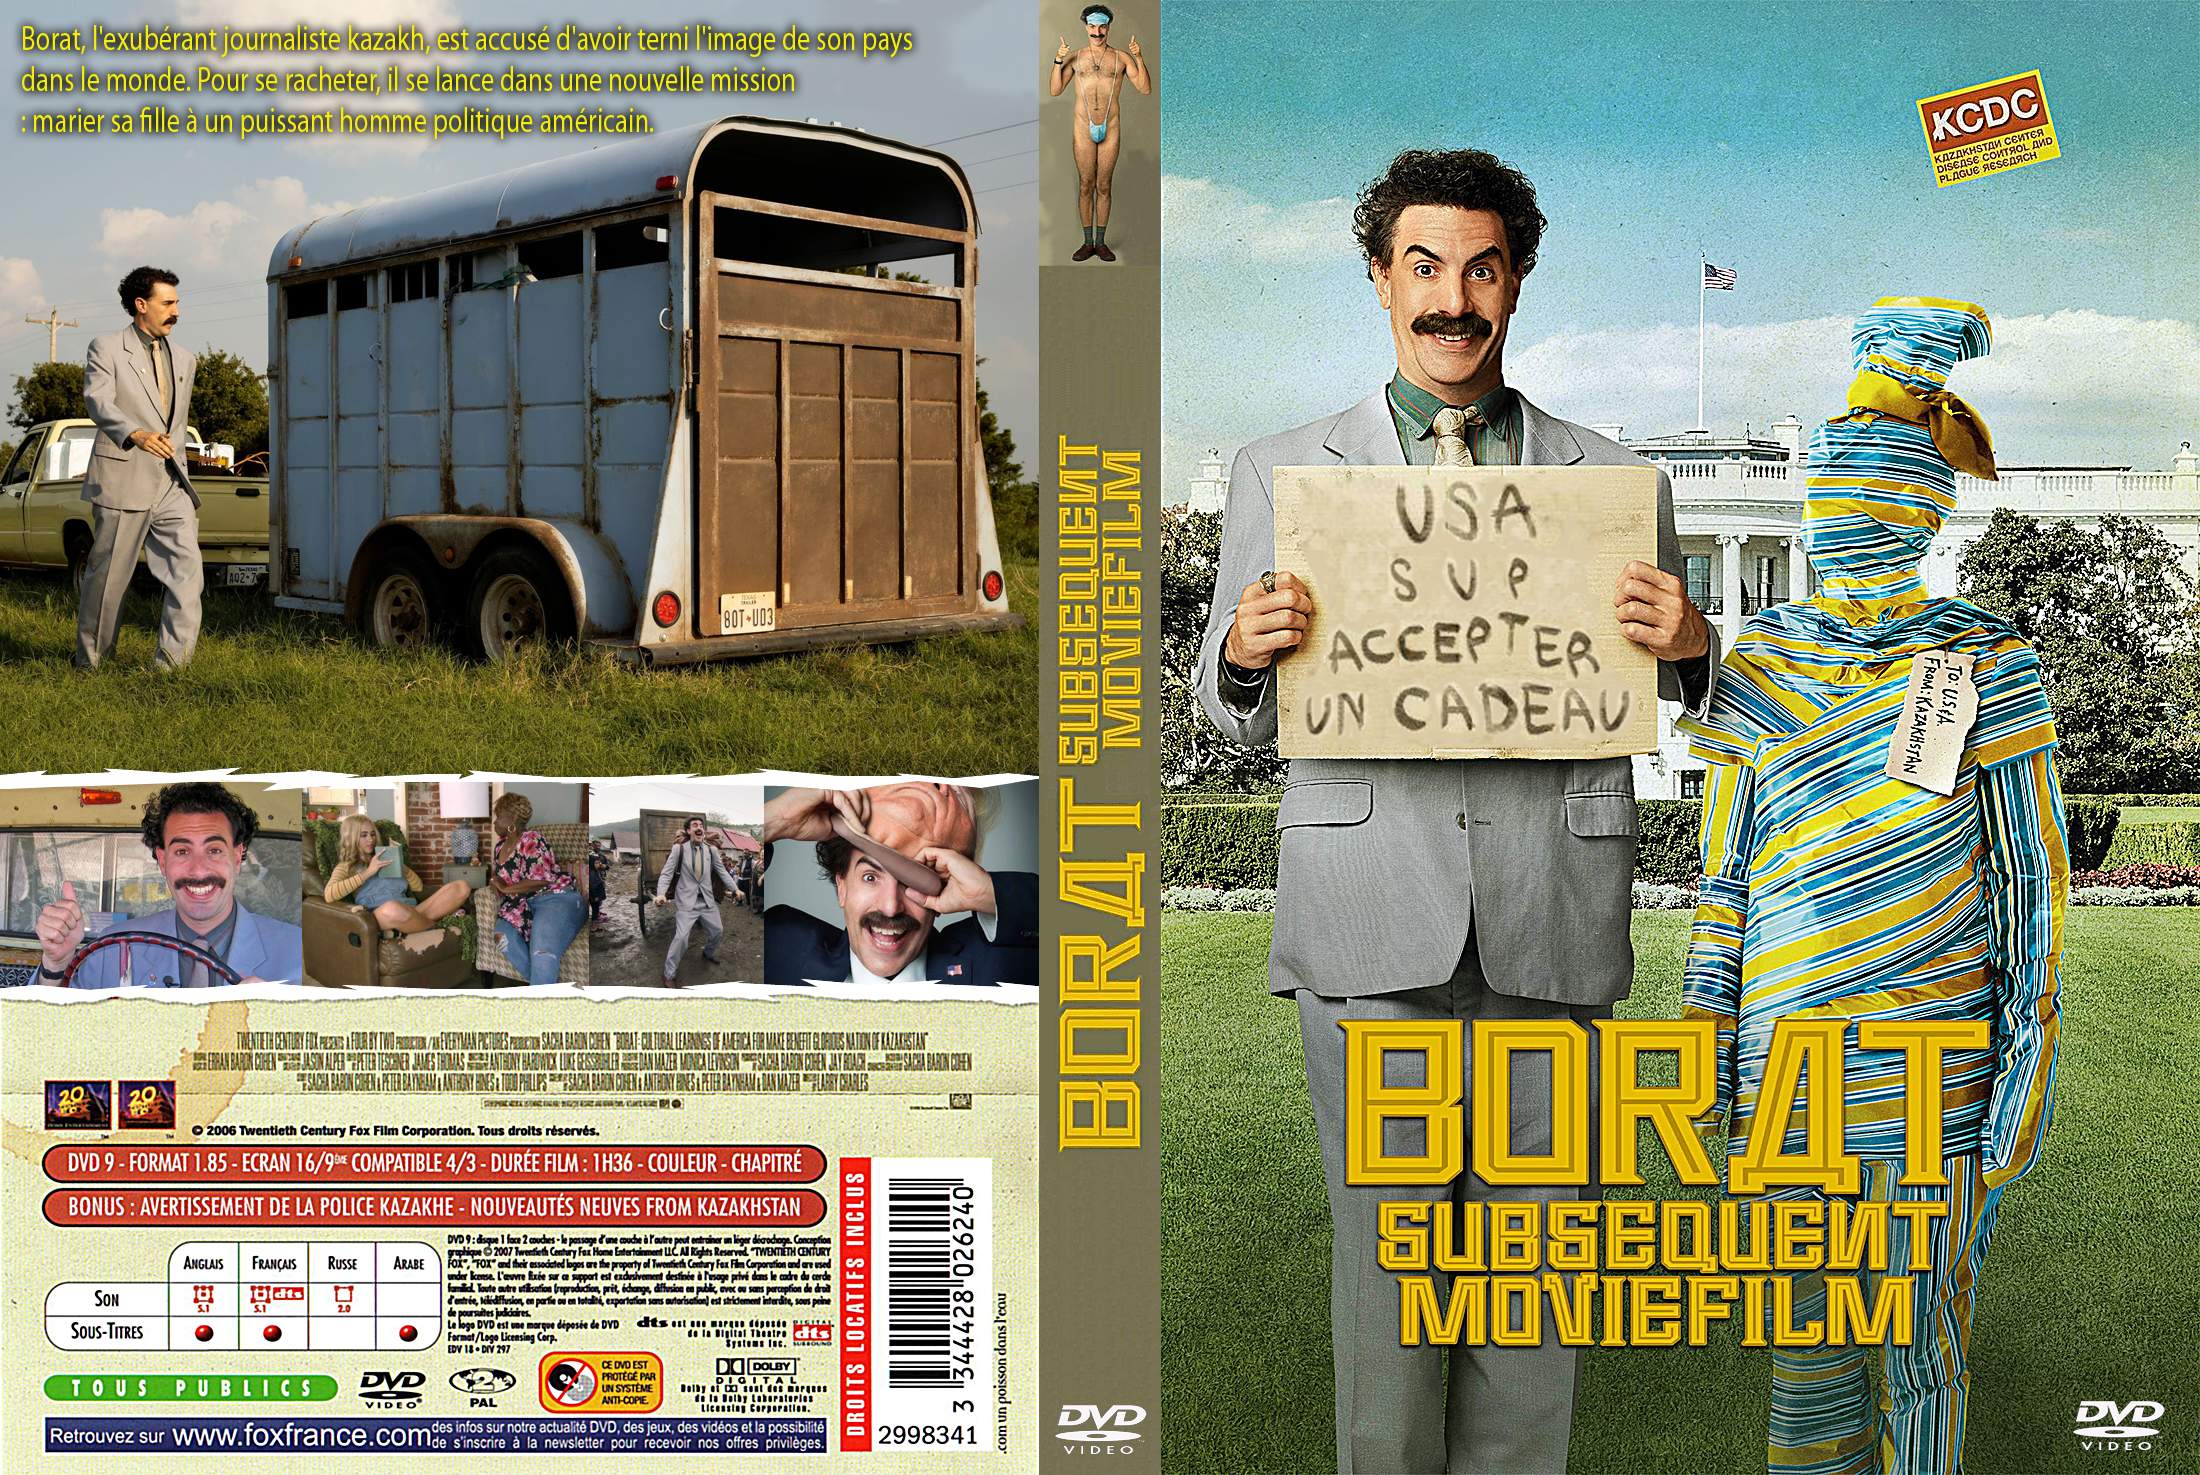 Jaquette DVD Borat 2 custom